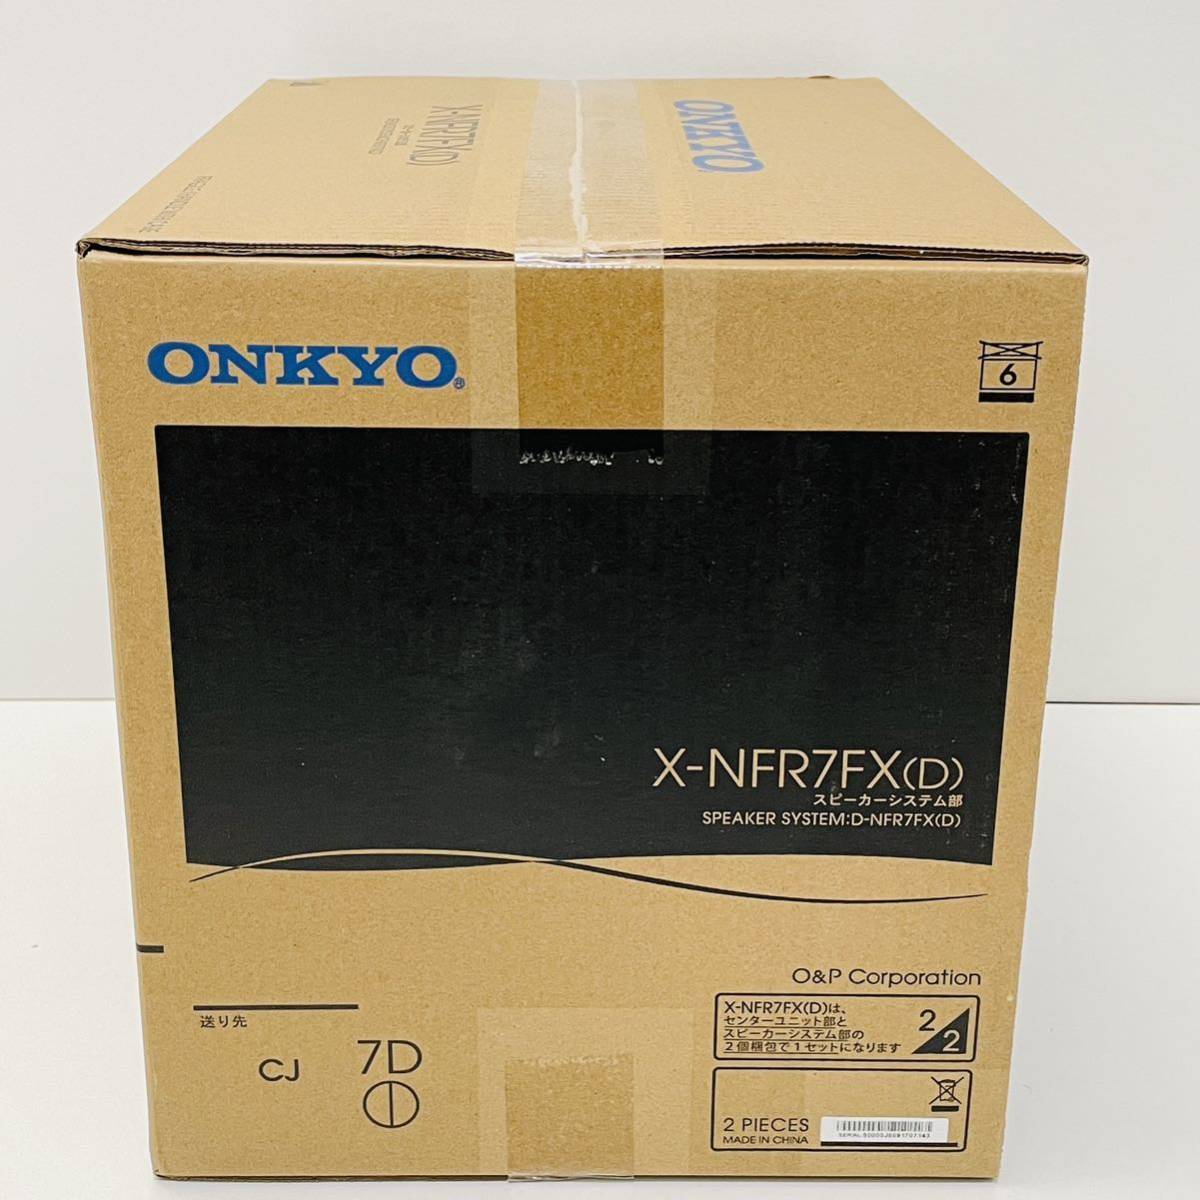 【未開封品】ONKYO オンキョー D-NFR7FX (D) X-NFR7FX (D) ハイレゾ音源対応 スピーカー ペア 未使用 廃盤 スピーカーシステム 20周年の画像4